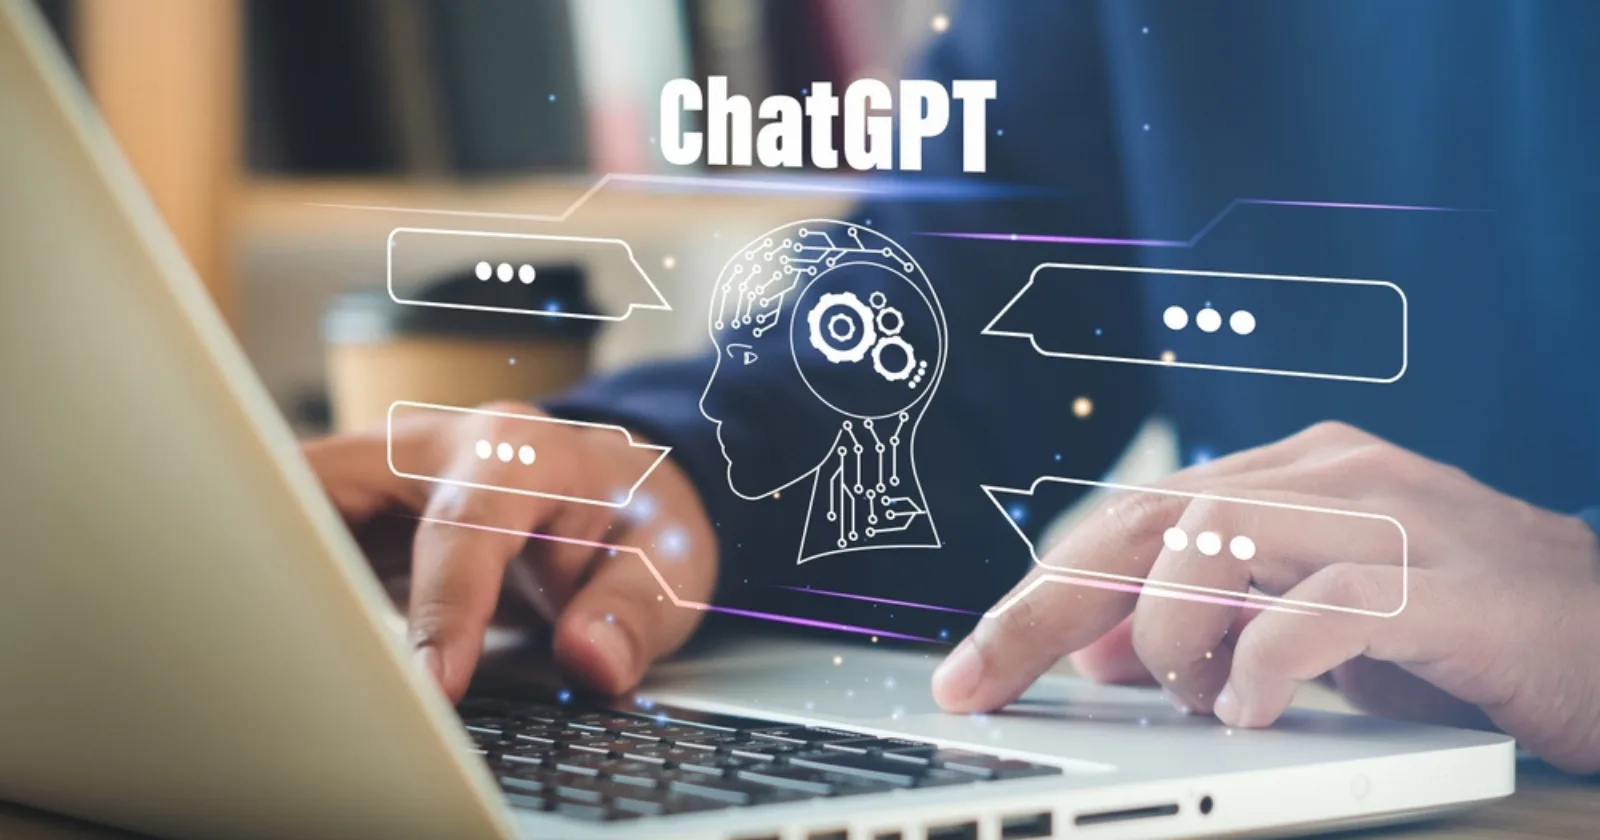 Khả năng giải toán của ChatGPT có được đánh giá cao không?